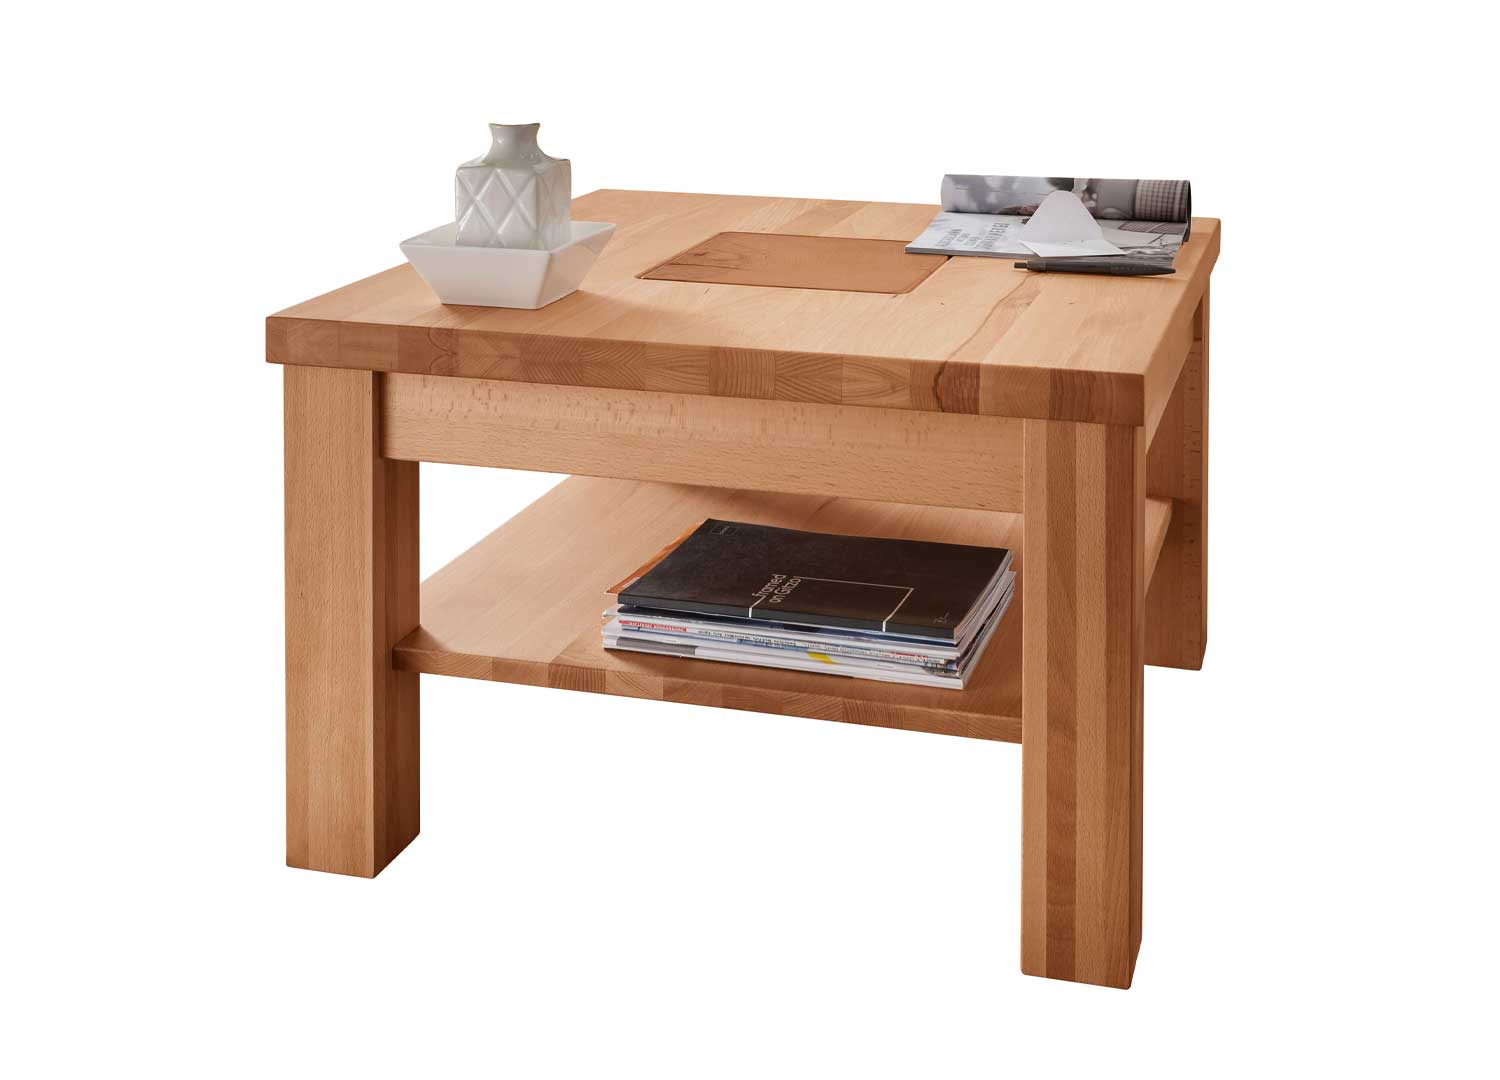 Petite table basse carrée en bois de hêtre massif